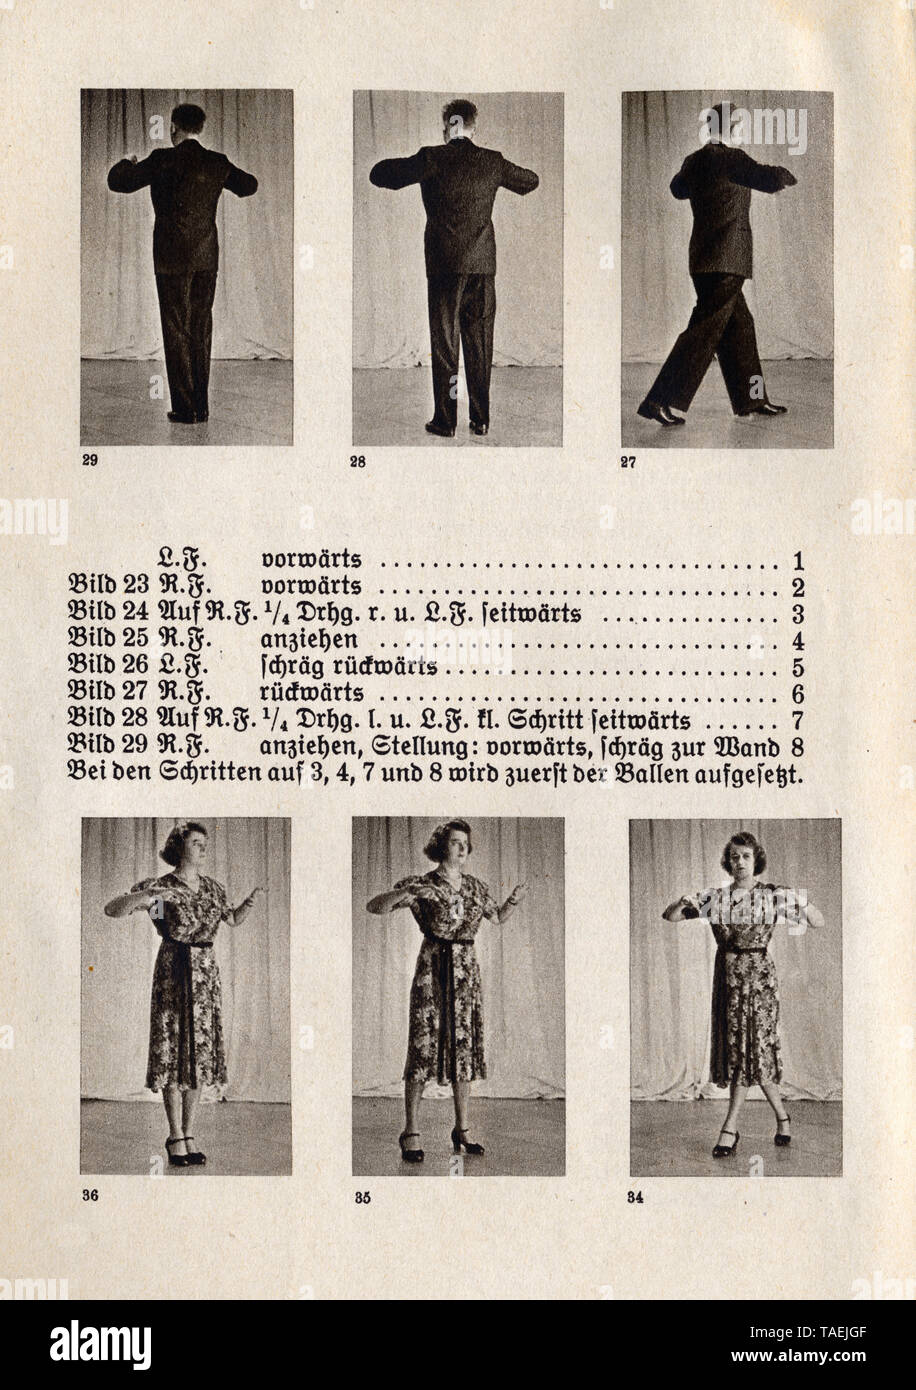 Anleitung zum Marschtanz, eine Seite aus dem deutschen Buch 'Der Tanz im Selbstunterricht, Rudolph'sche Verlagsbuchhandlung, Dresda', 1941 Foto Stock